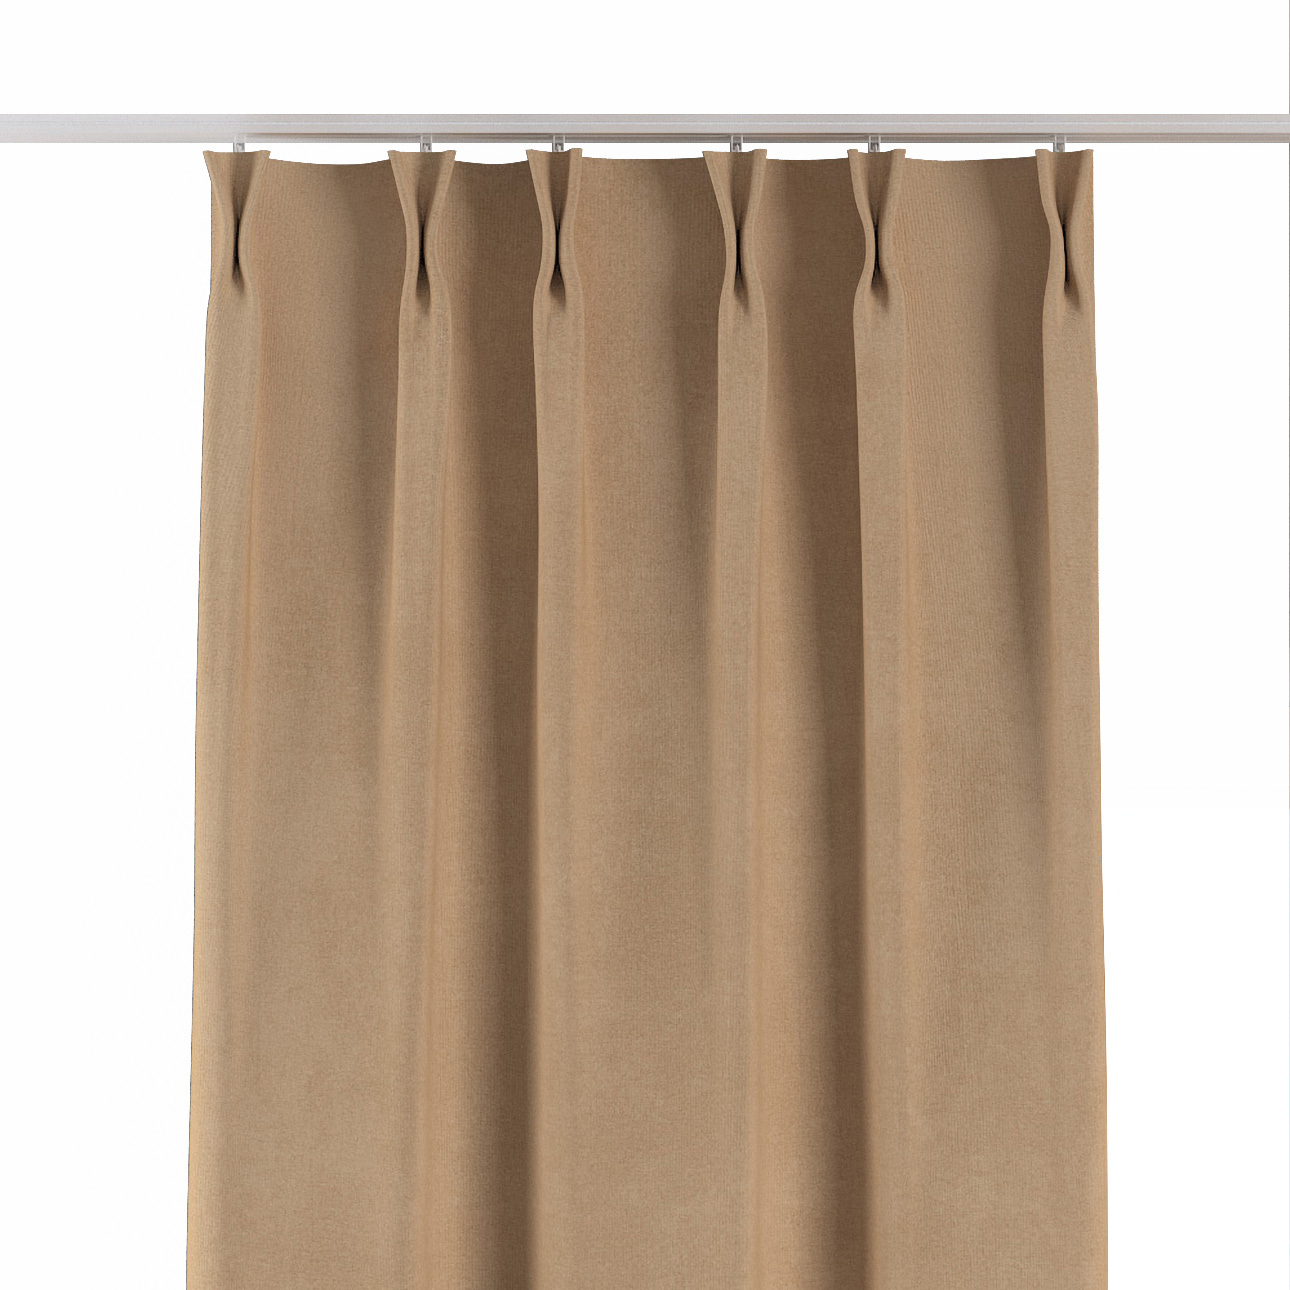 Vorhang mit flämischen 2-er Falten, sand, Crema (180-47) günstig online kaufen